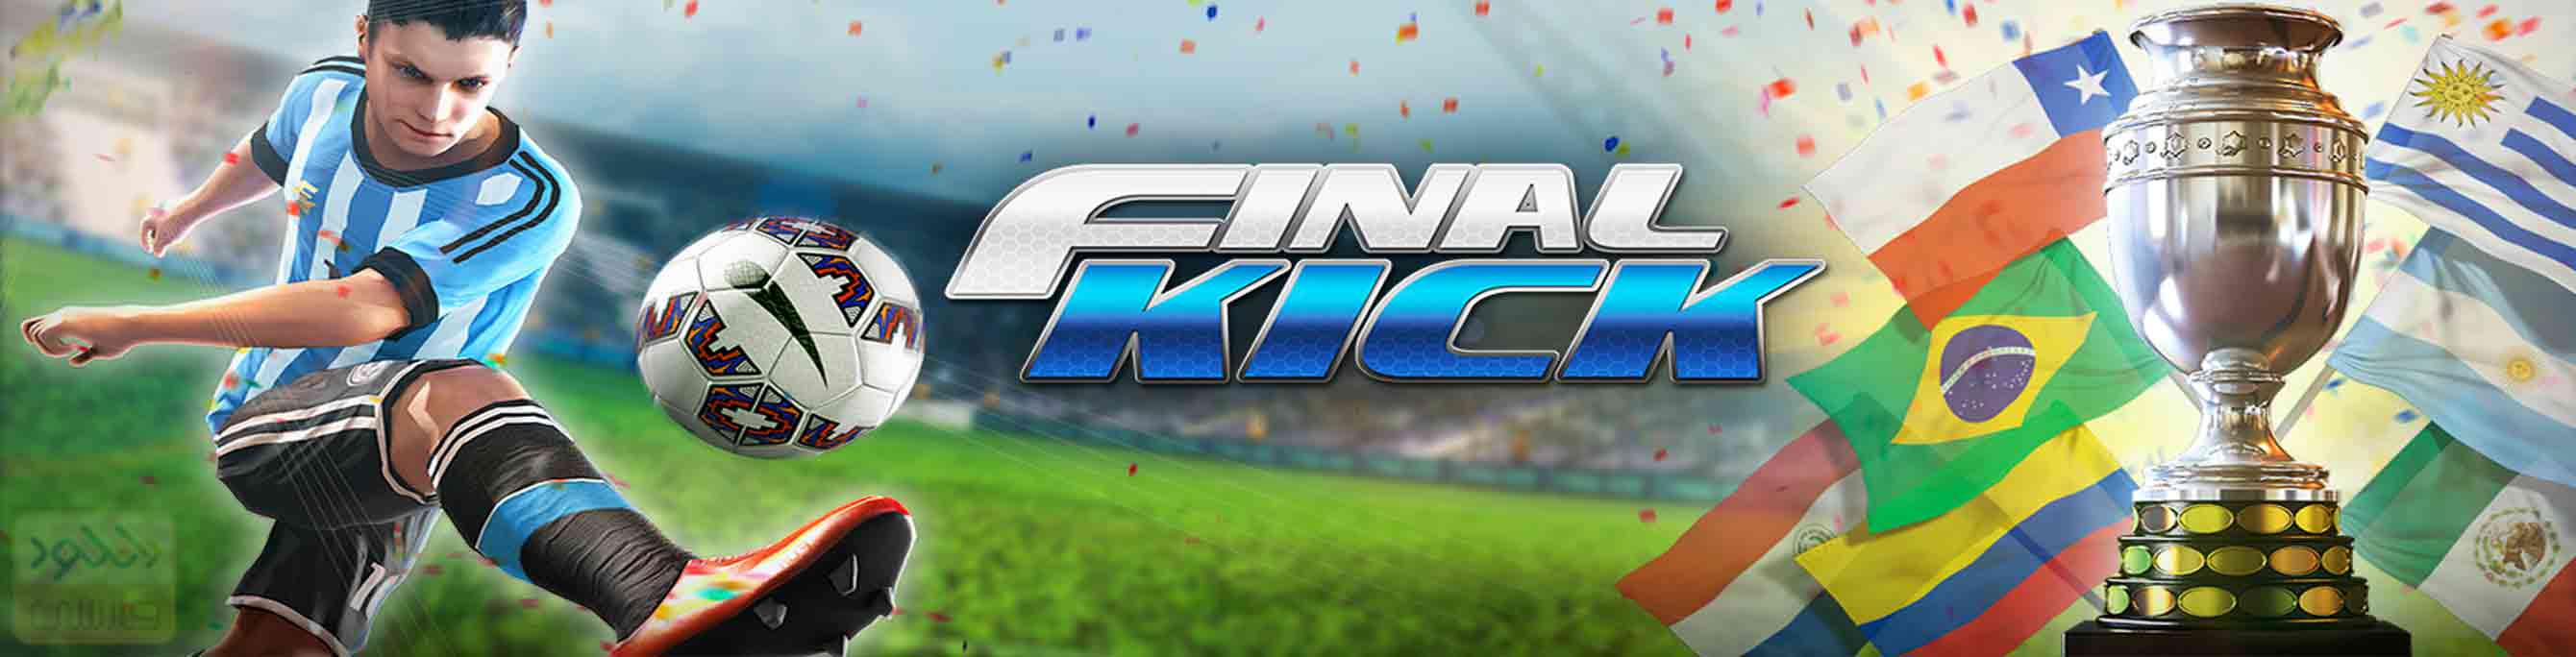 دانلود بازی Final kick v7.0 برای اندروید و iOS + مود